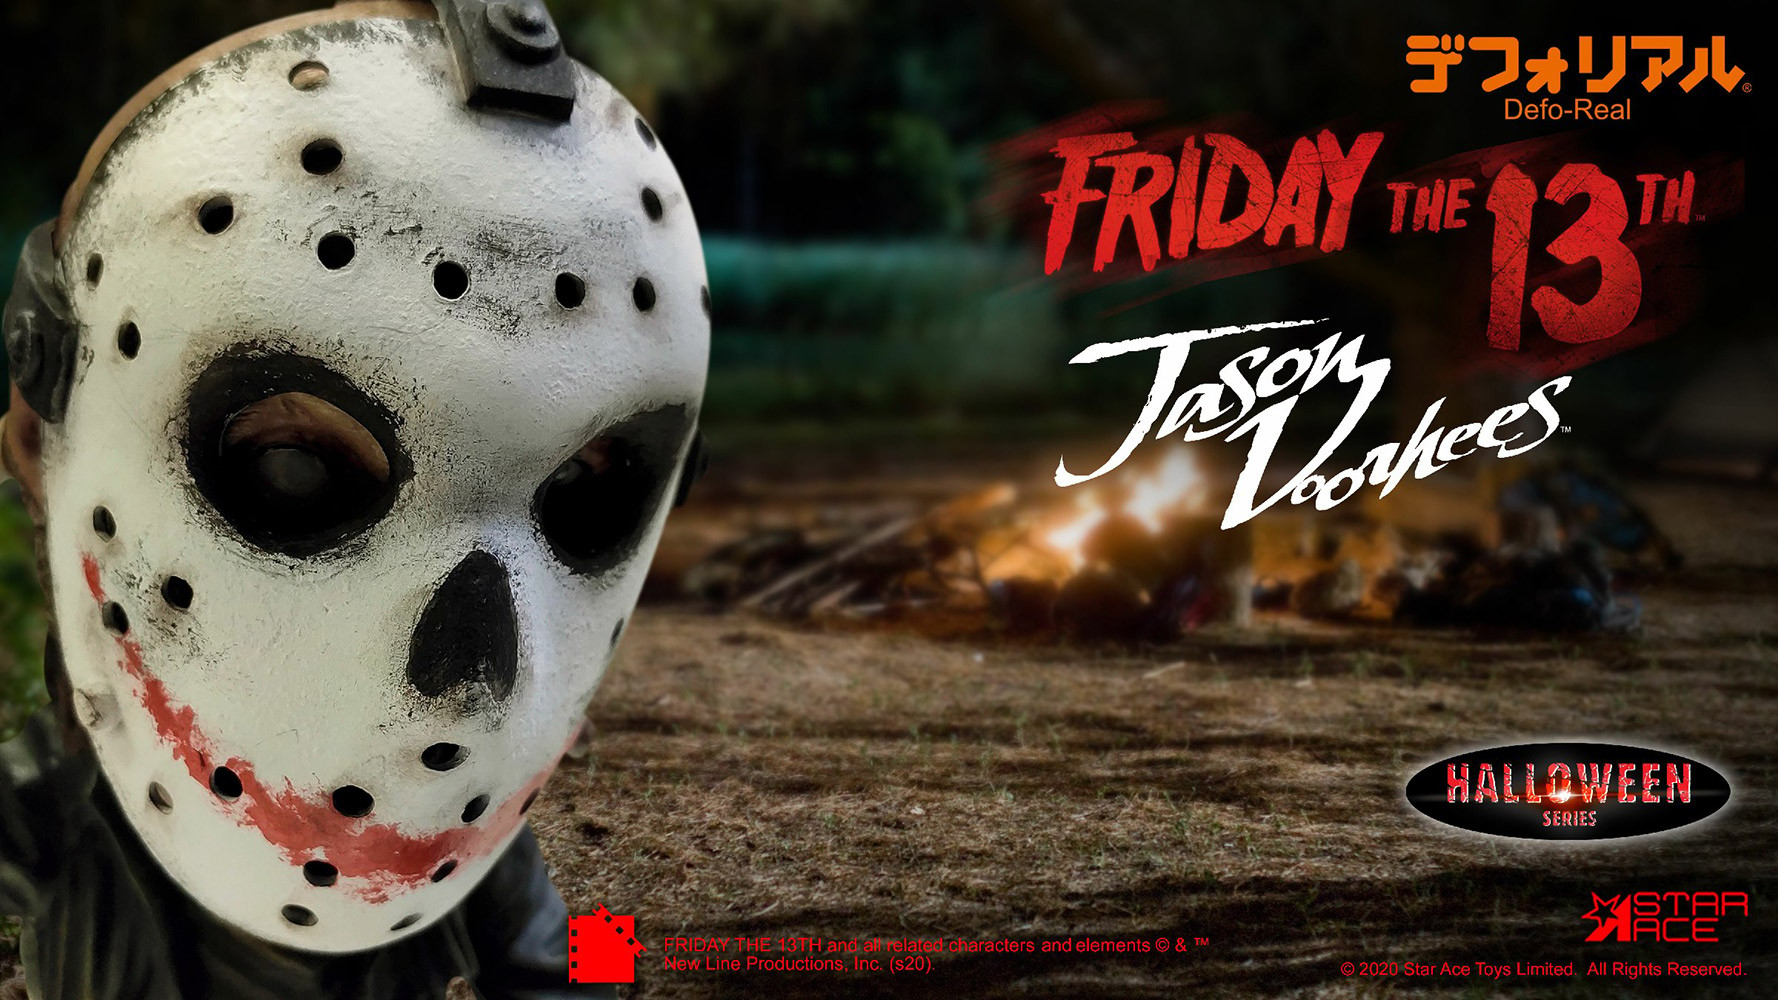 Jason (Halloween Version)- Prototype Shown